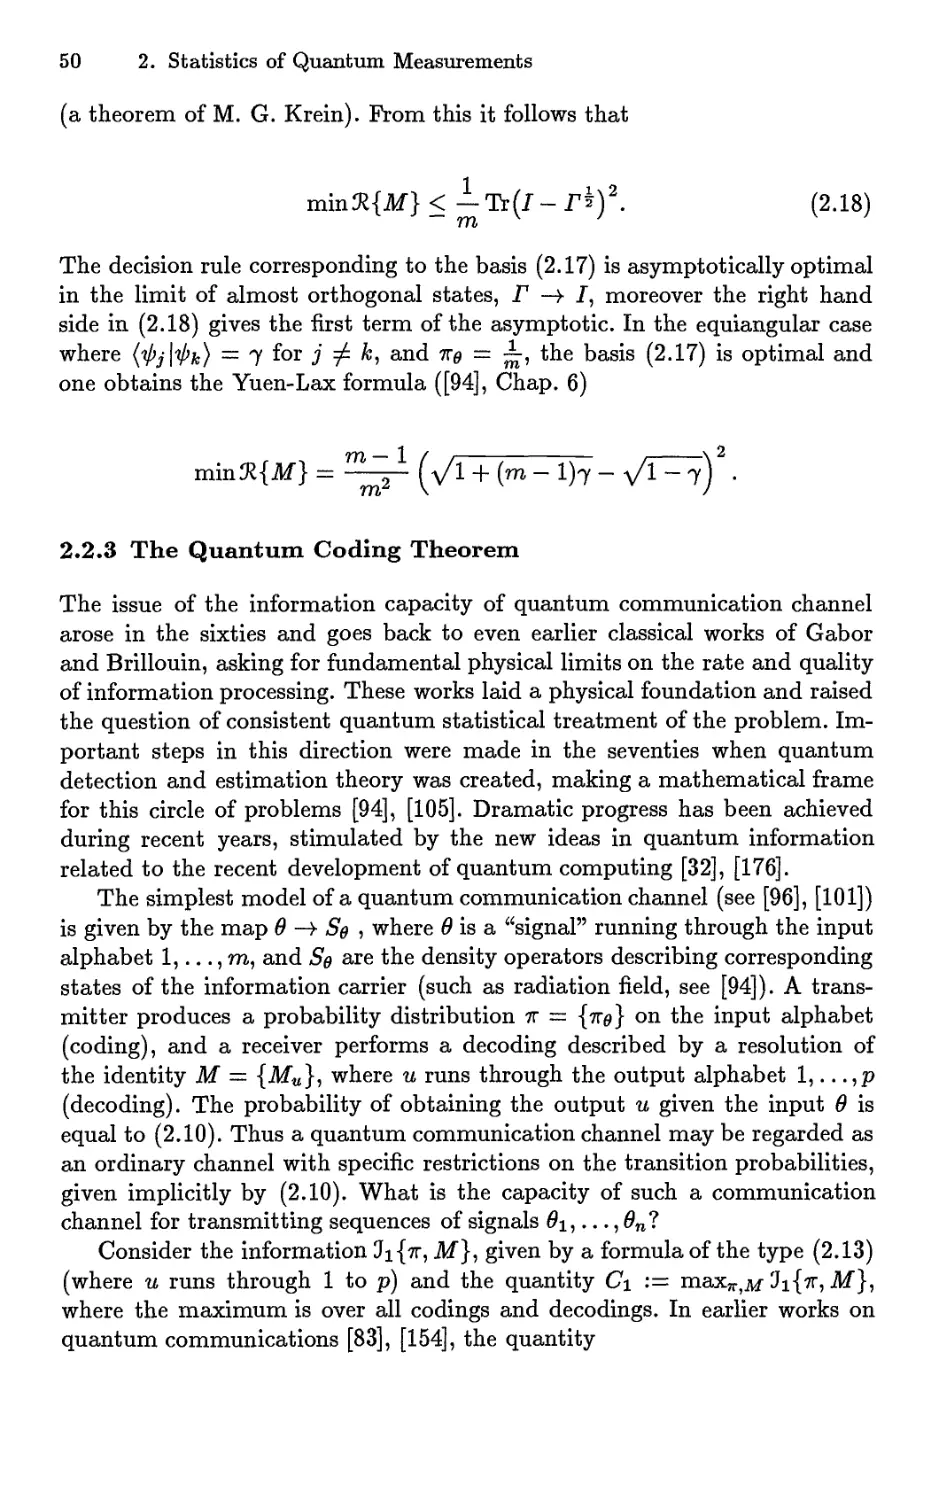 2.2.3 The Quantum Coding Theorem